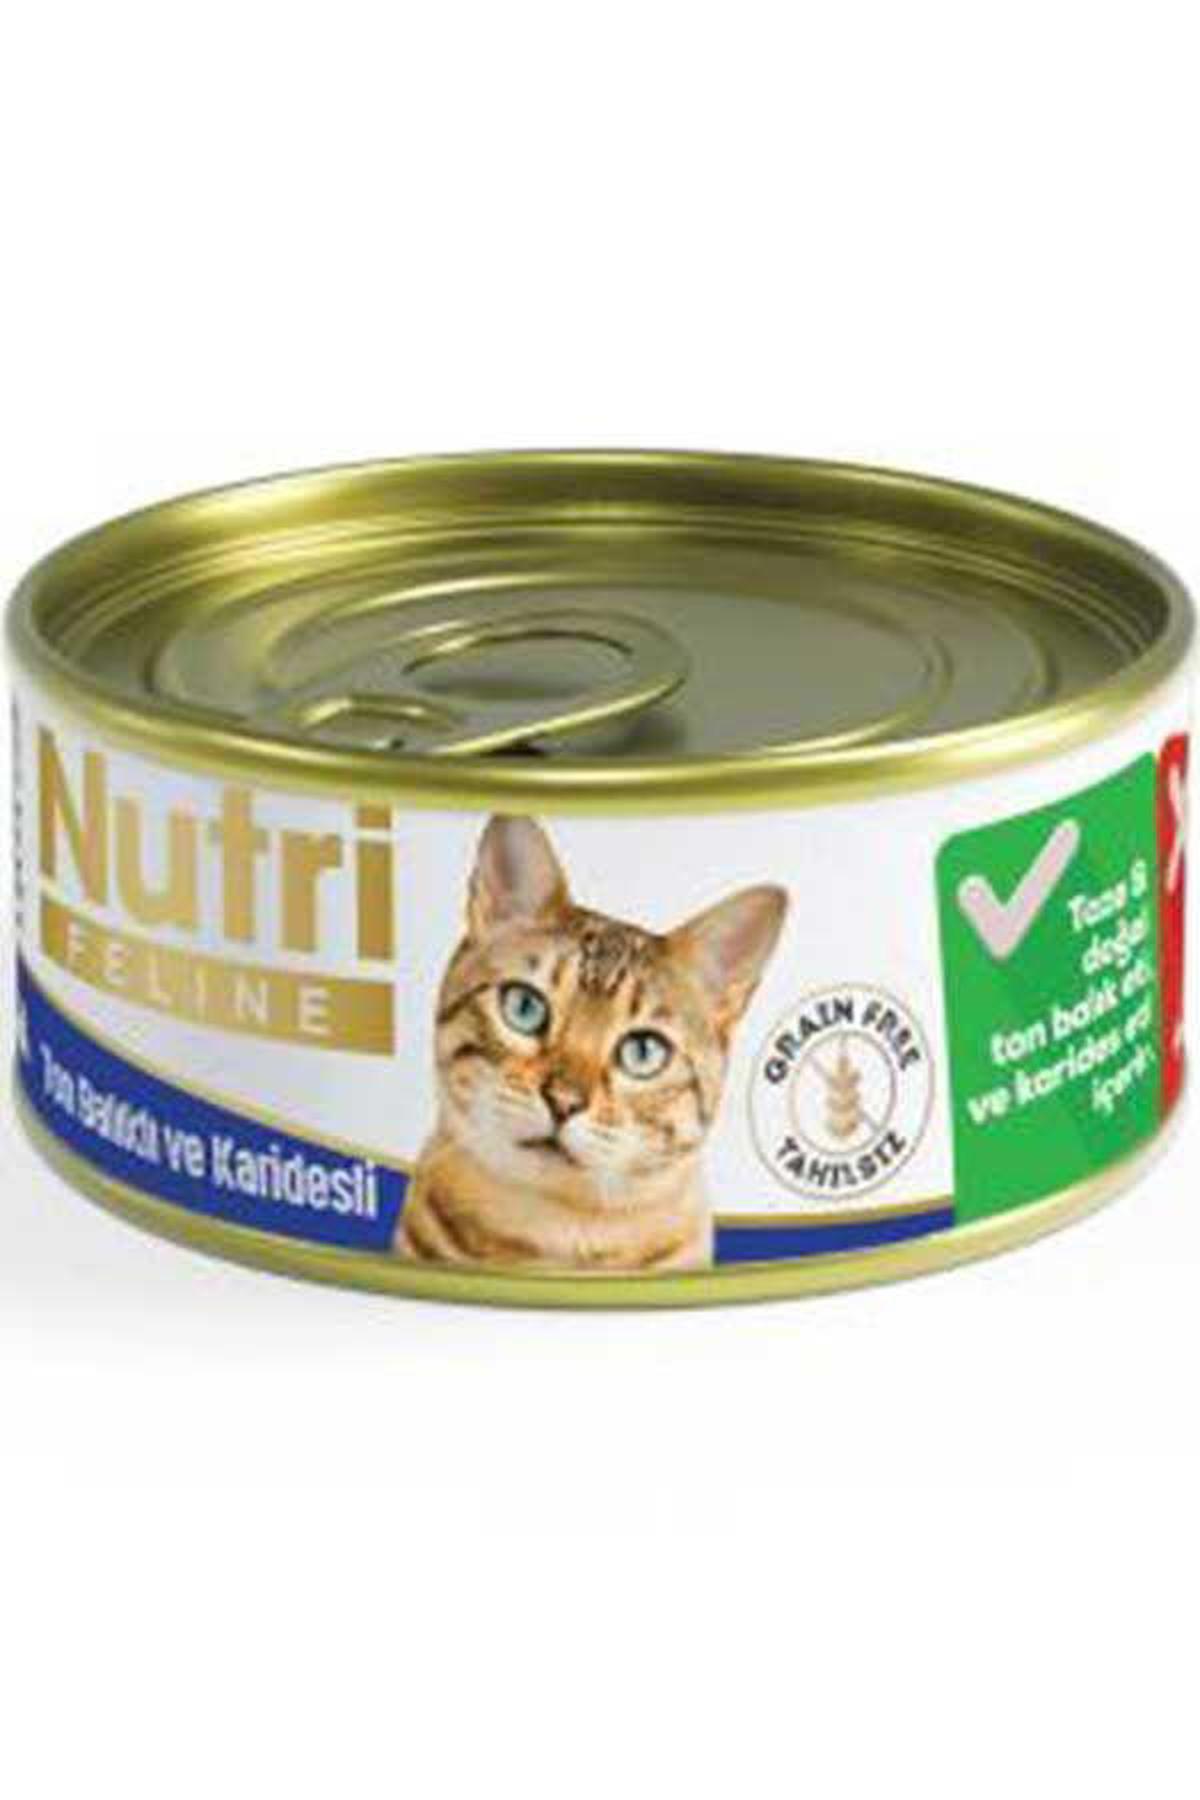 Nutri Feline Grain Free Ton Balıklı ve Karidesli Yetişkin Yaş Kedi Maması 85 gr